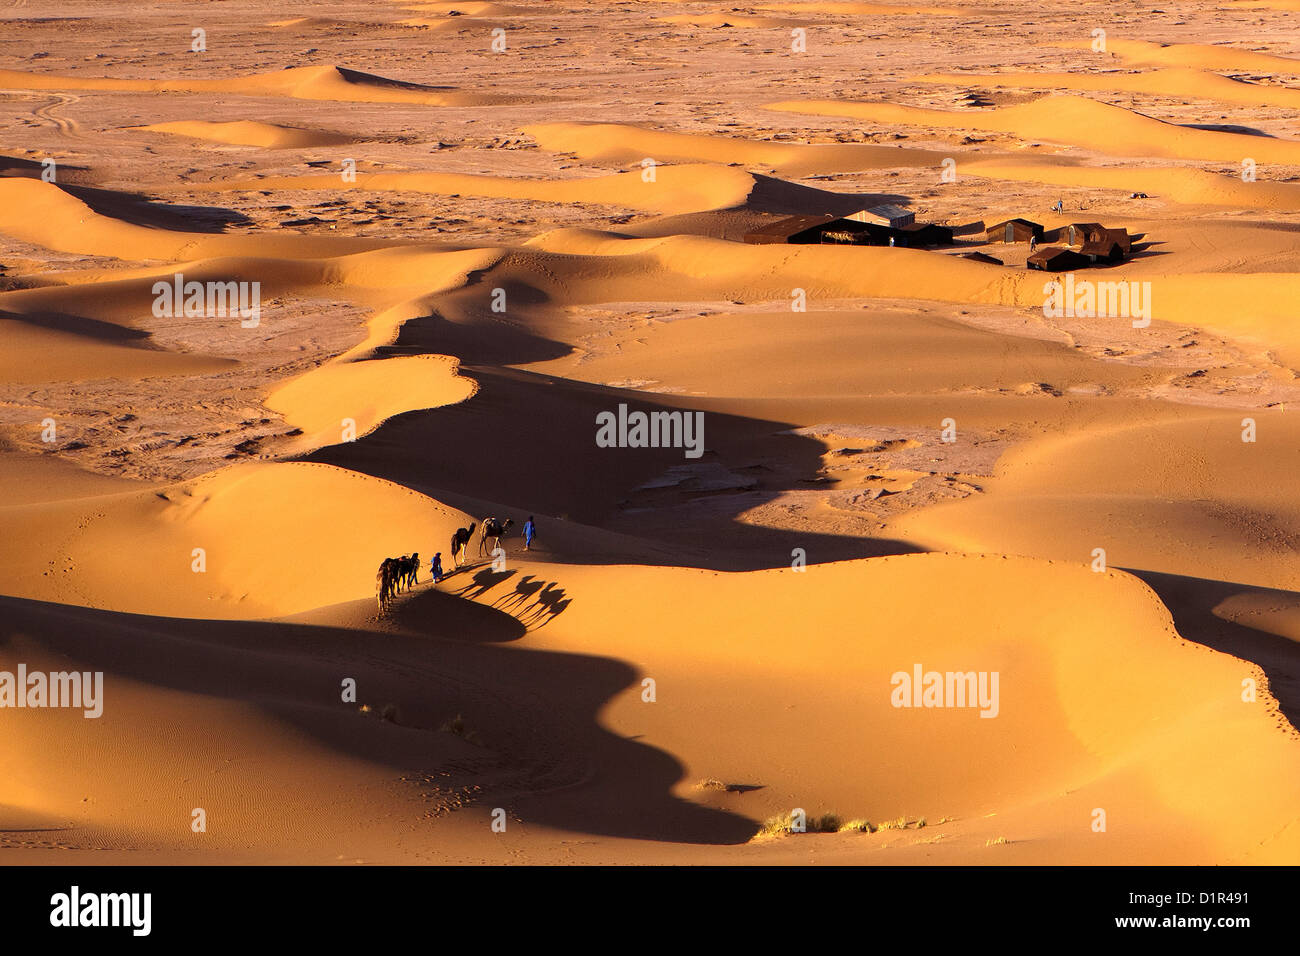 Le Maroc, M'Hamid, Erg Chigaga dunes de sable. Désert du Sahara. Camp de vacances, un bivouac. Caravane de chameaux. Banque D'Images